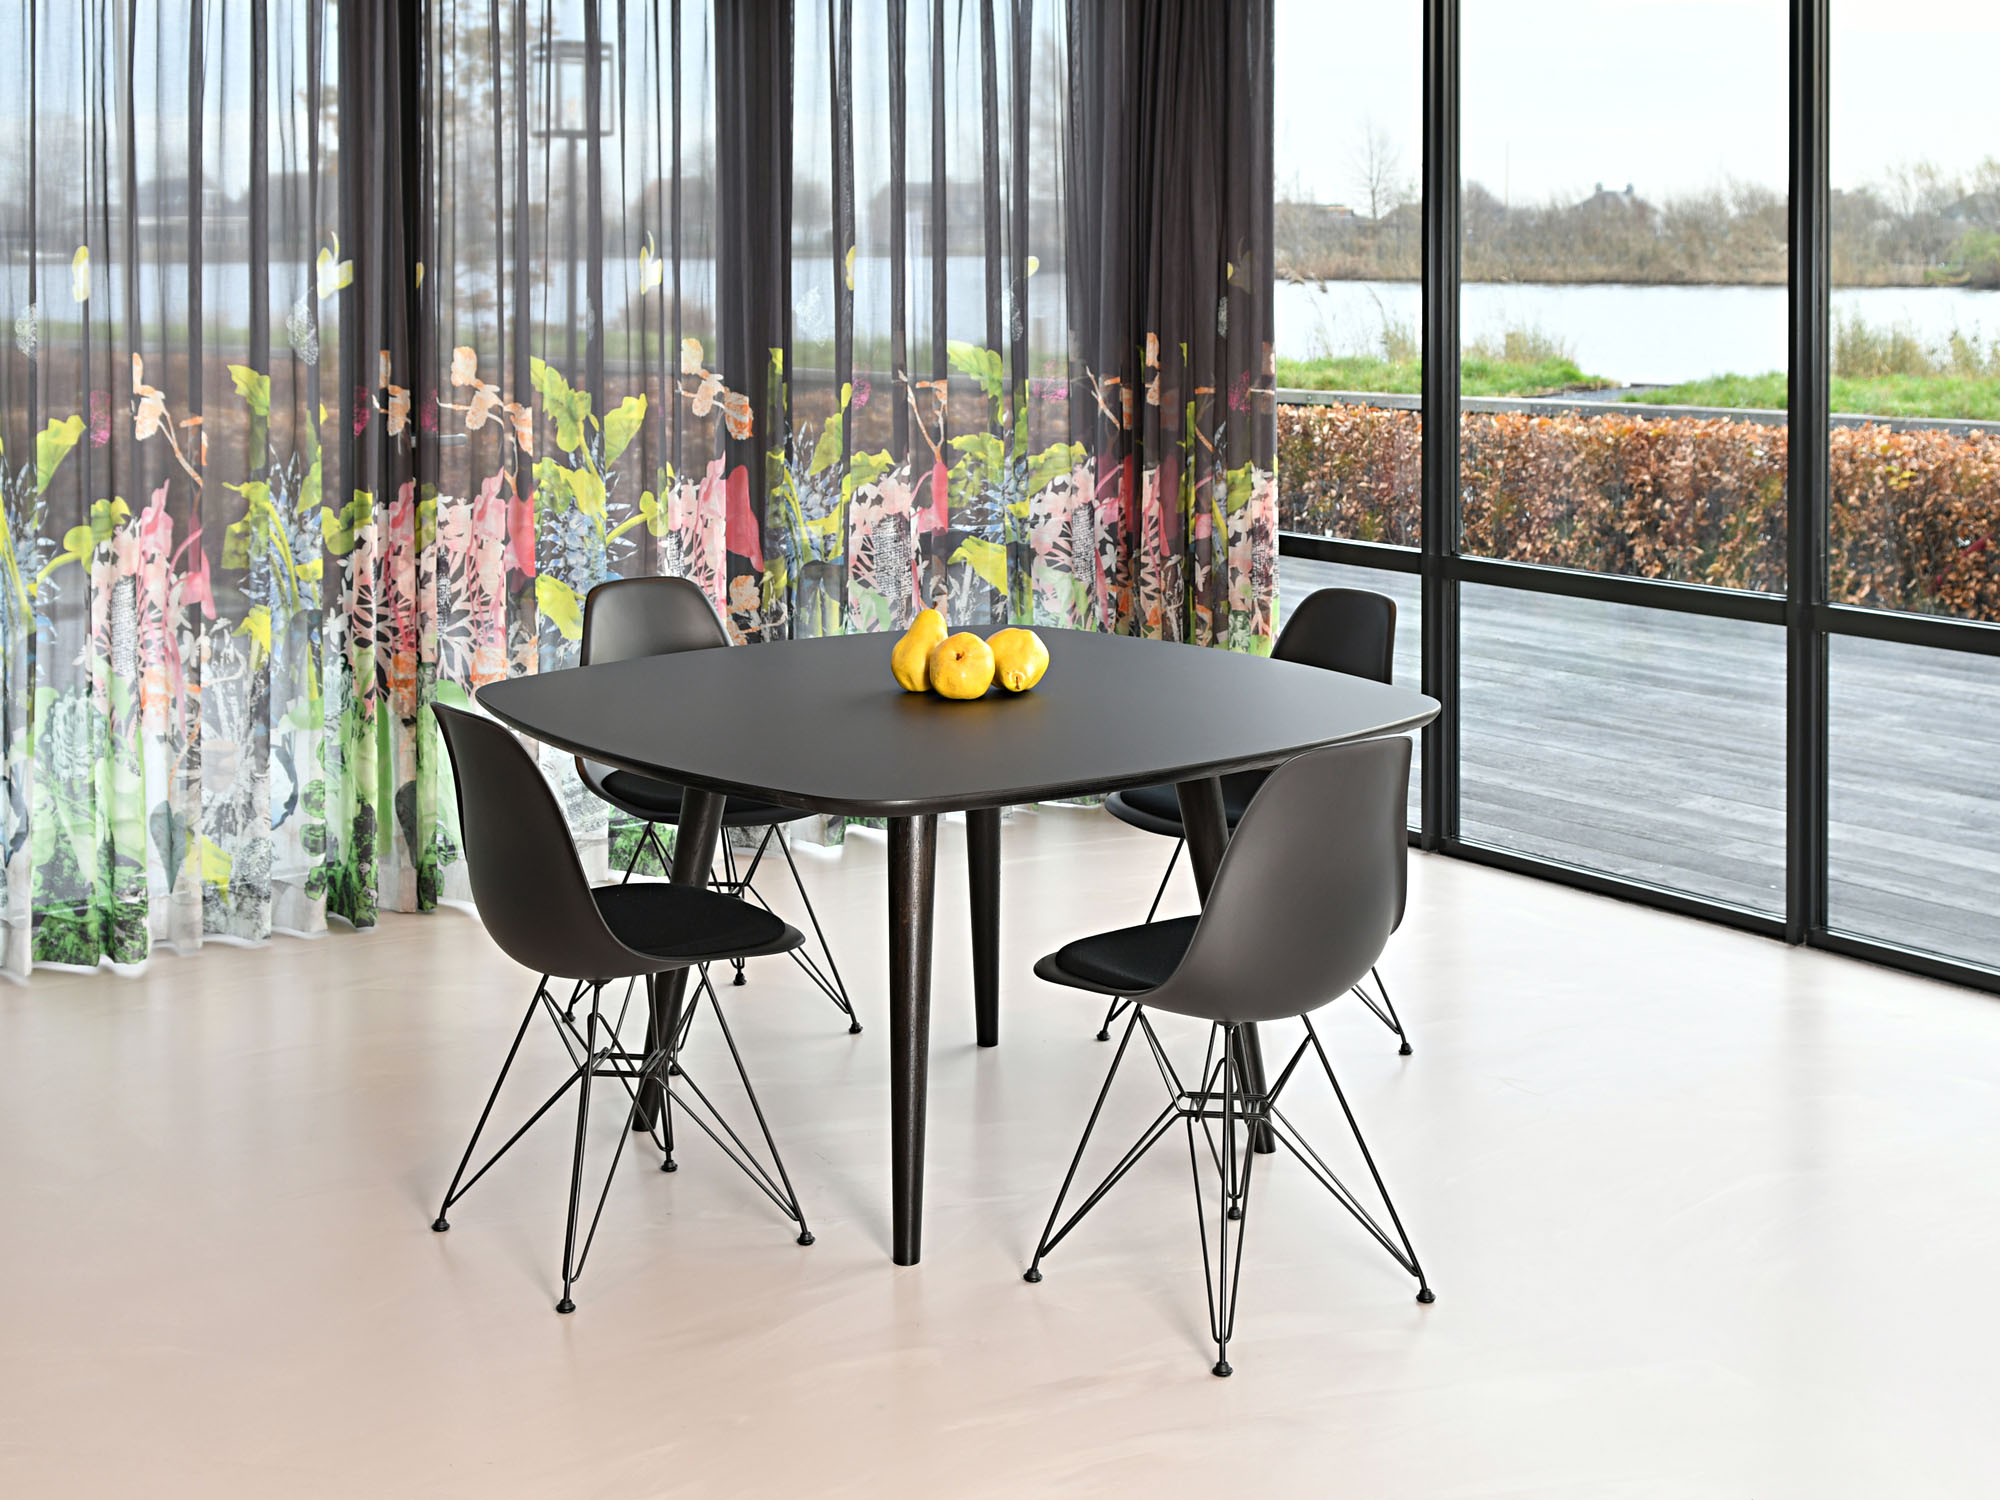 RP-tafel, ontwerp door Coen Castelijn